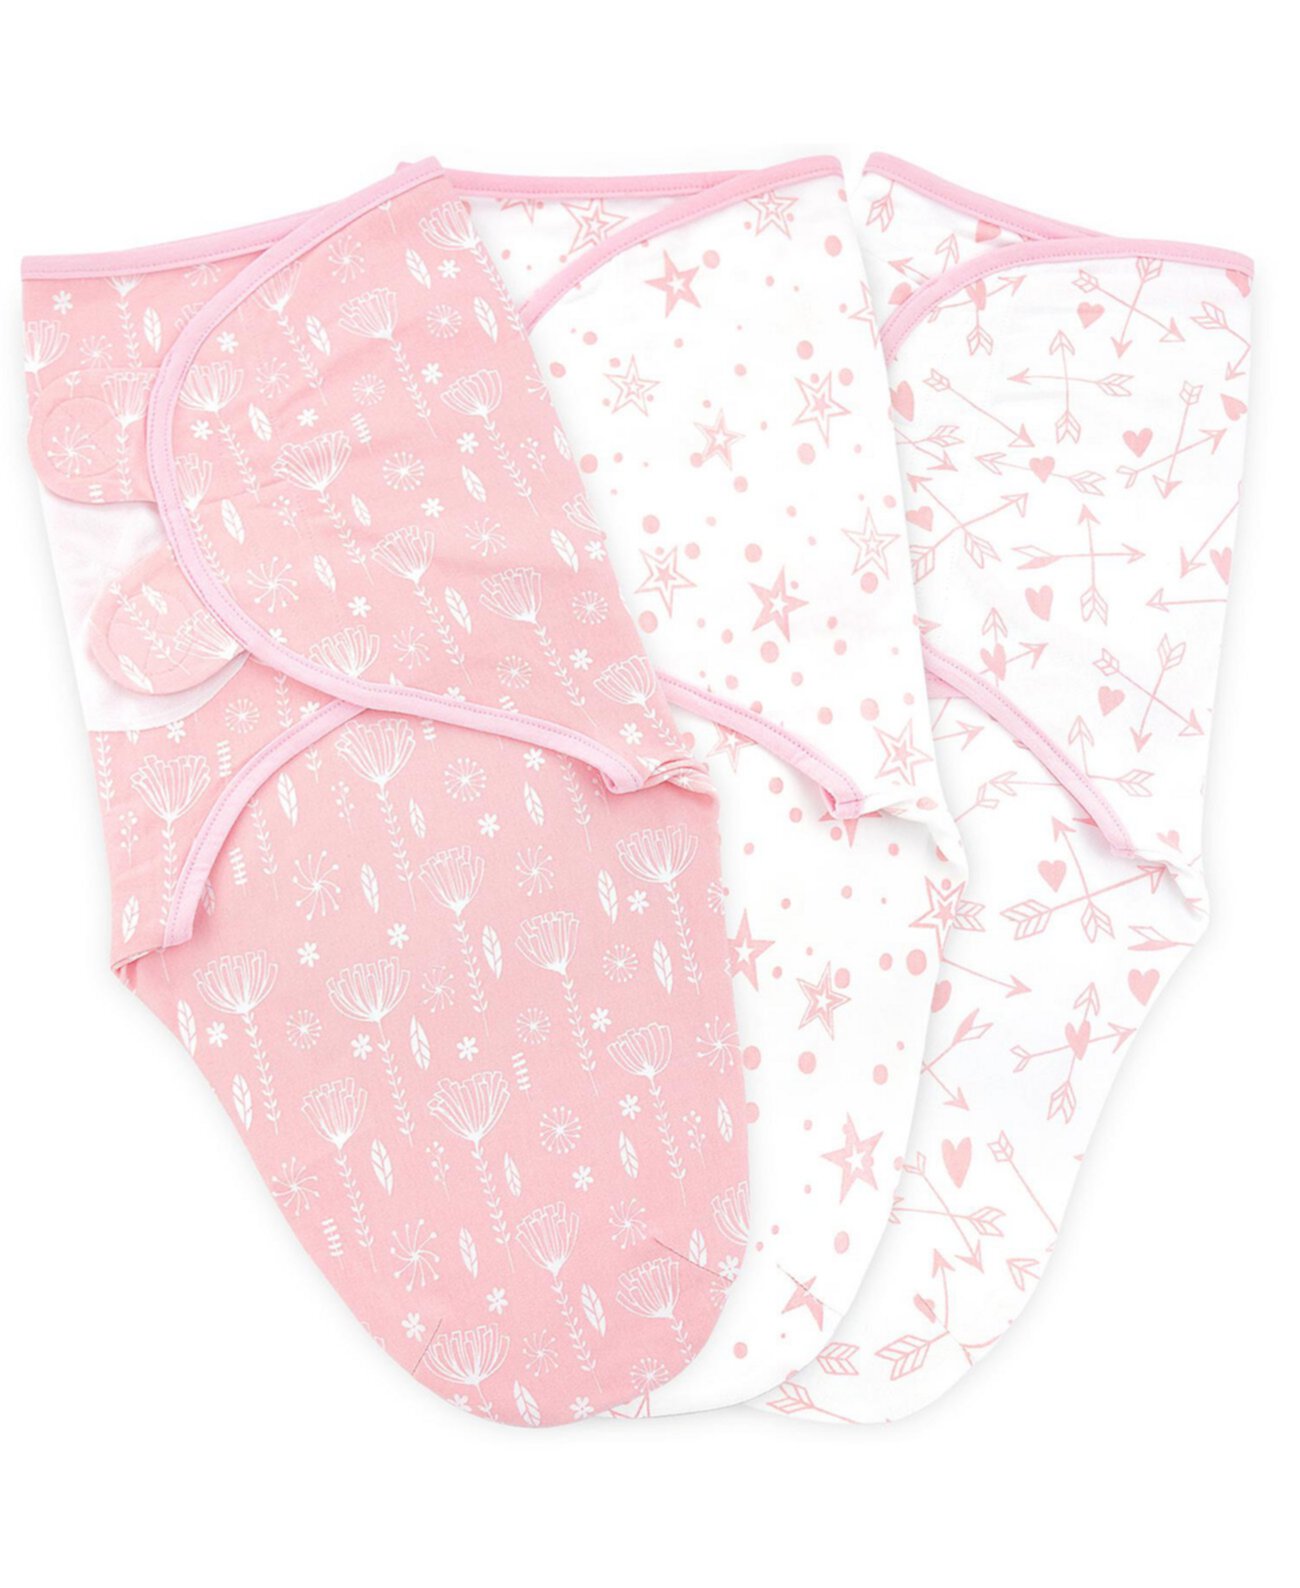 Детское пеленальное одеяло для мальчиков и девочек, 3 комплекта пелен для новорожденных, регулируемый пеленальный мешок для сна для младенцев Bublo Baby